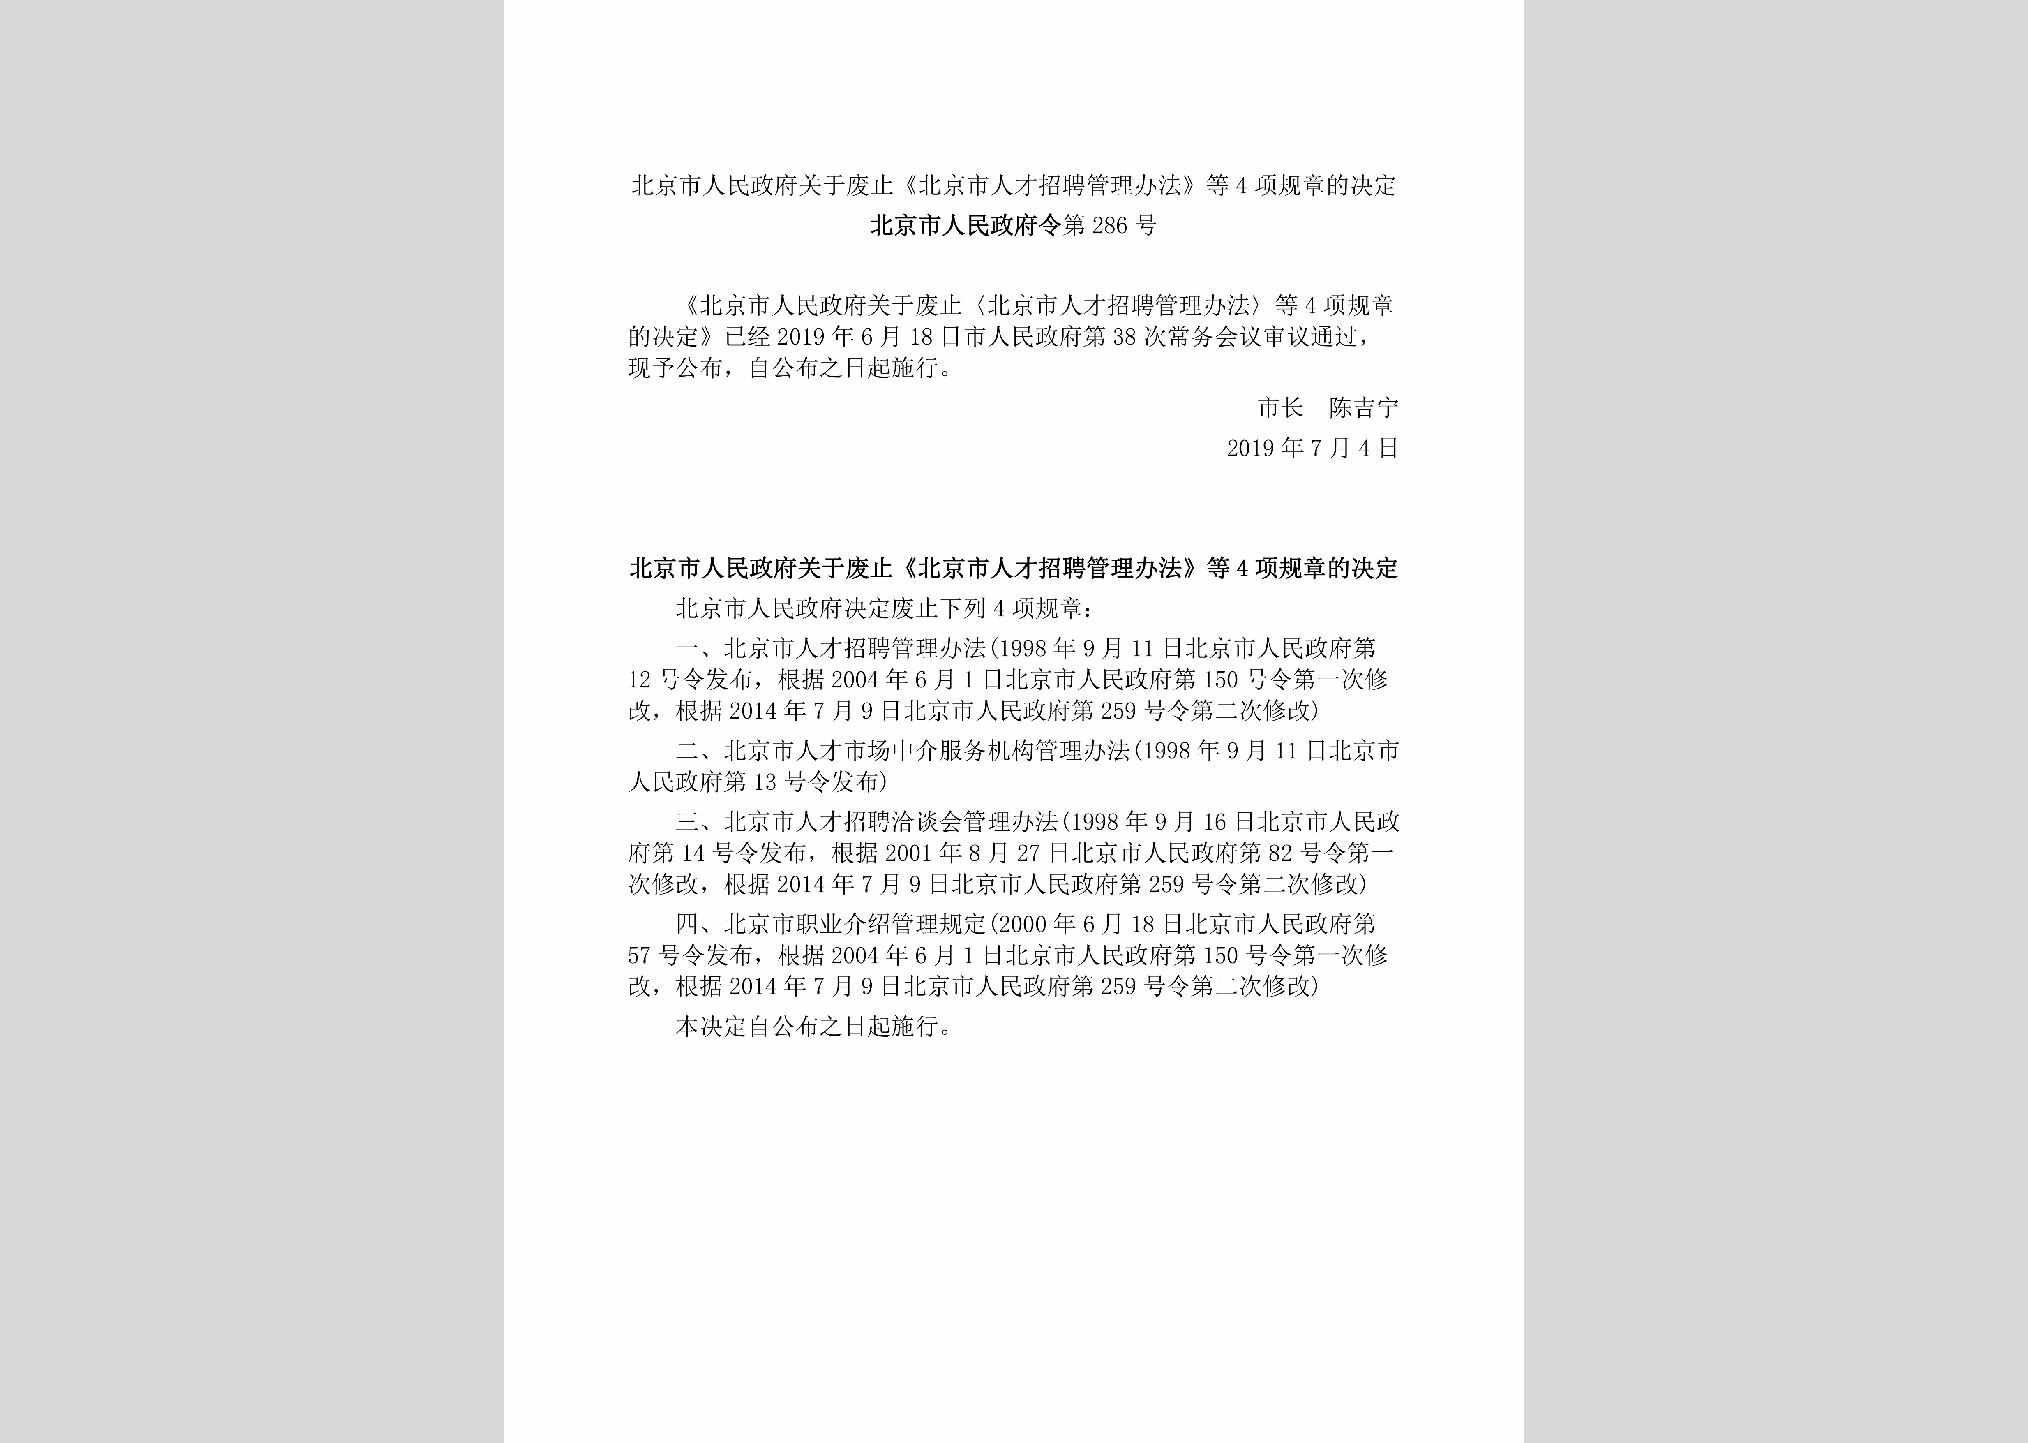 北京市人民政府令[2019]286号：北京市人民政府关于废止《北京市人才招聘管理办法》等4项规章的决定